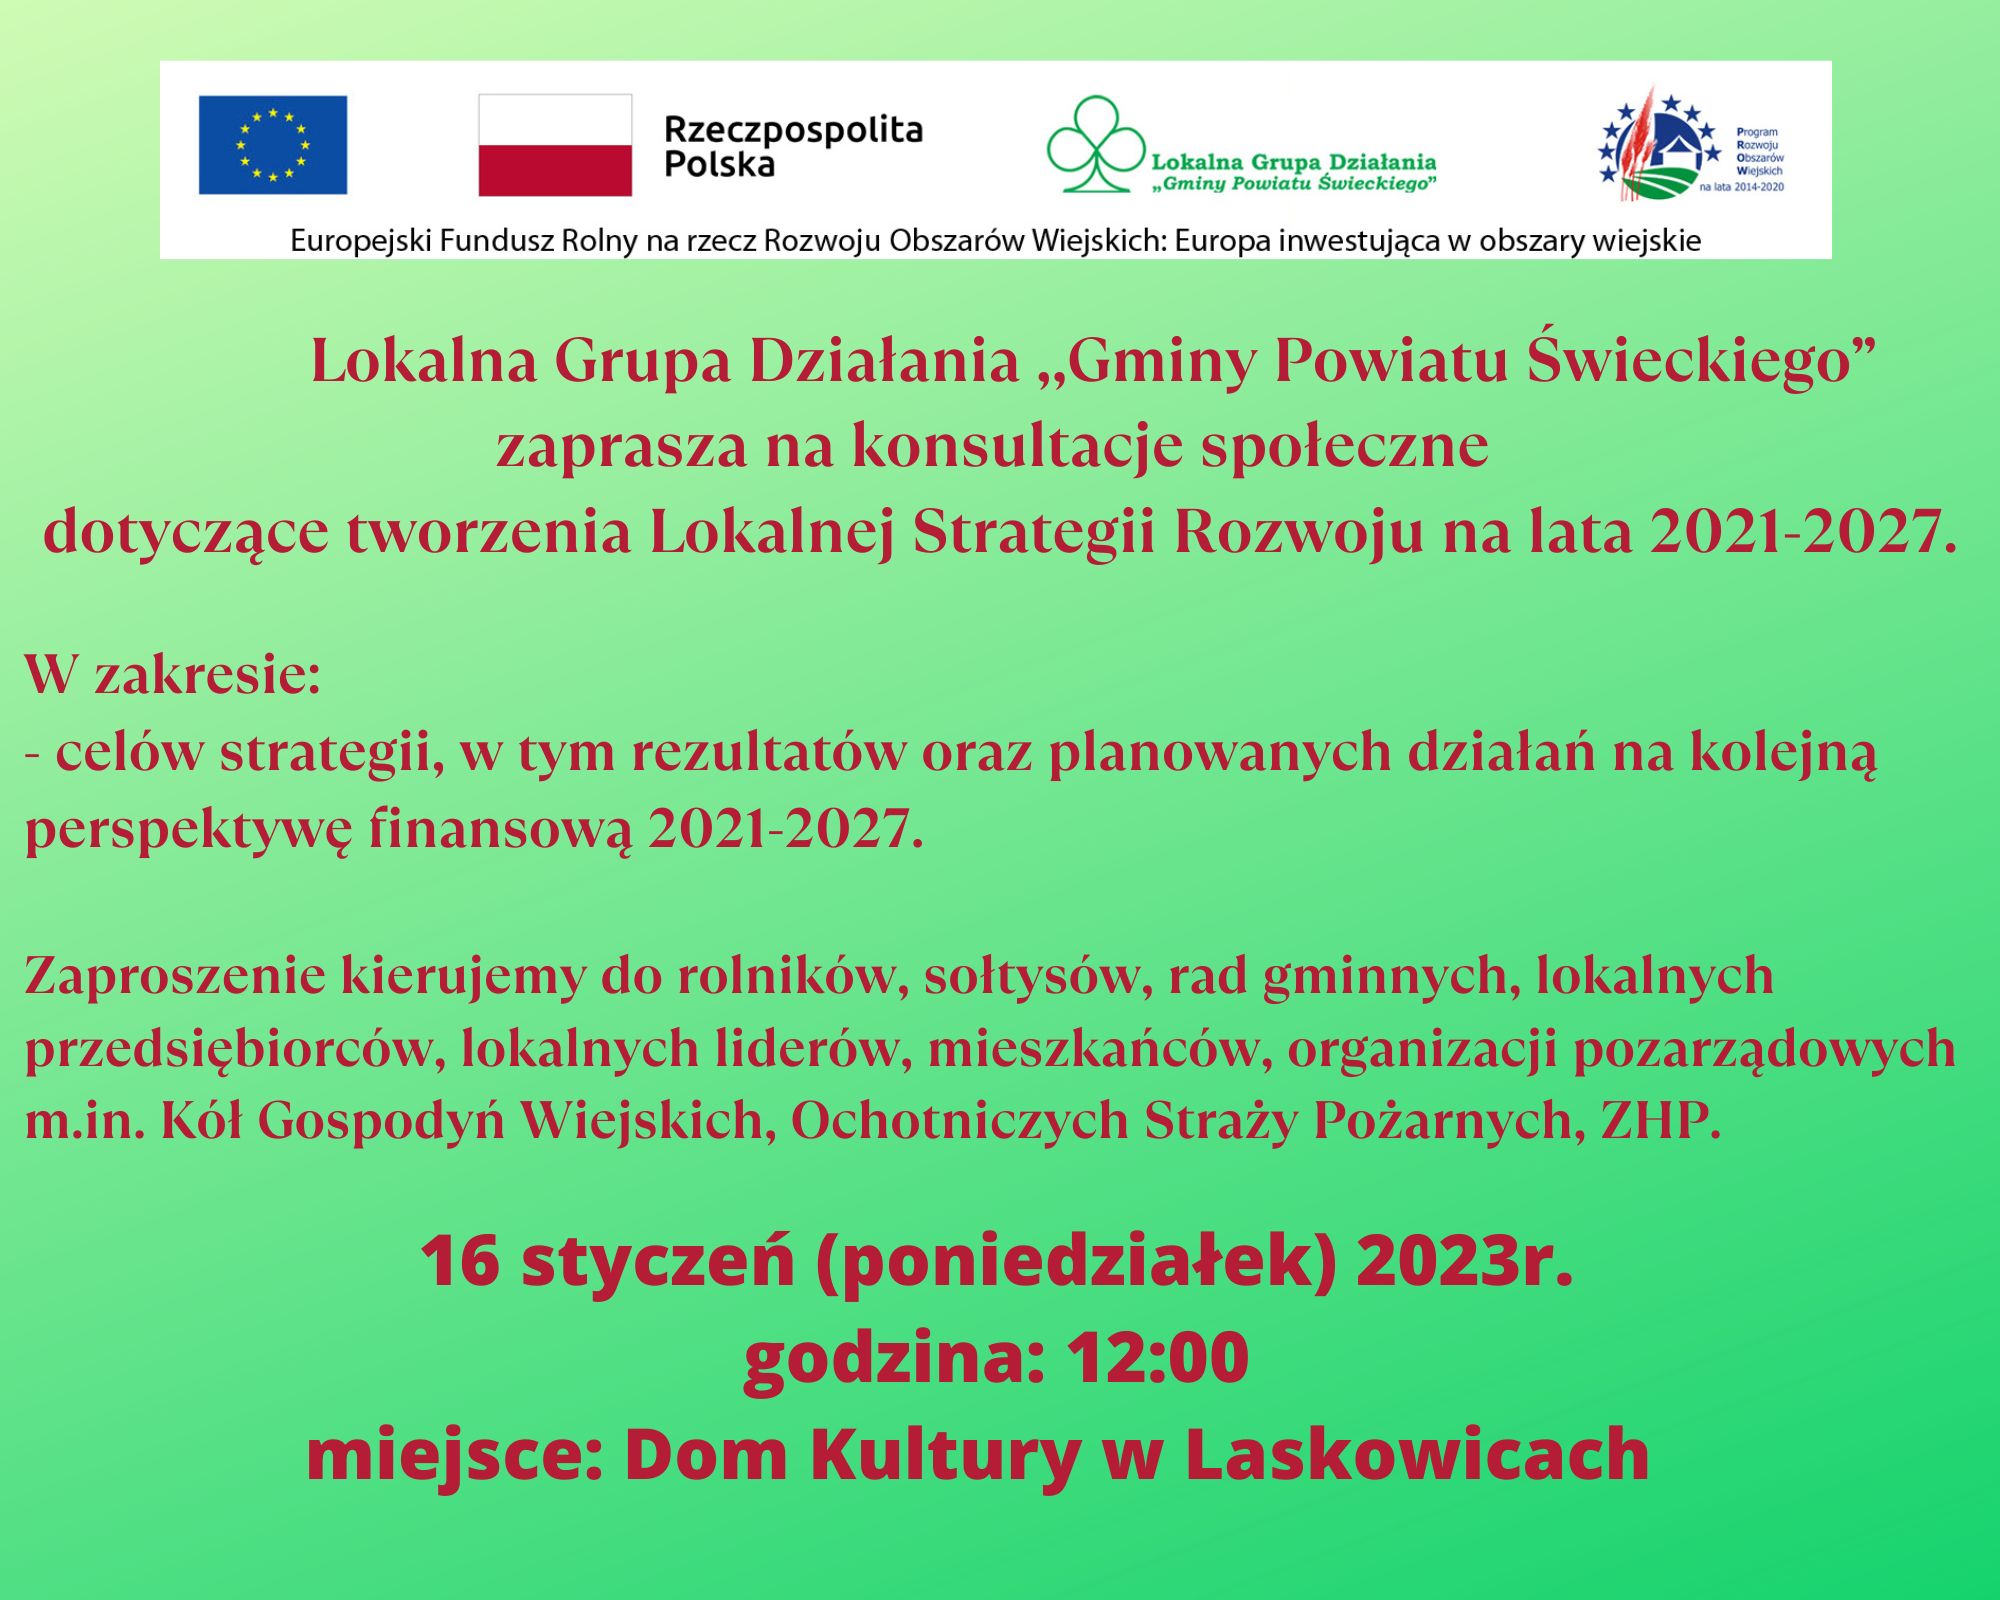 Konsultacje społeczne Lokalnej Grupy Działania „Gminy Powiatu Świeckiego” 16.01.2023 r. 